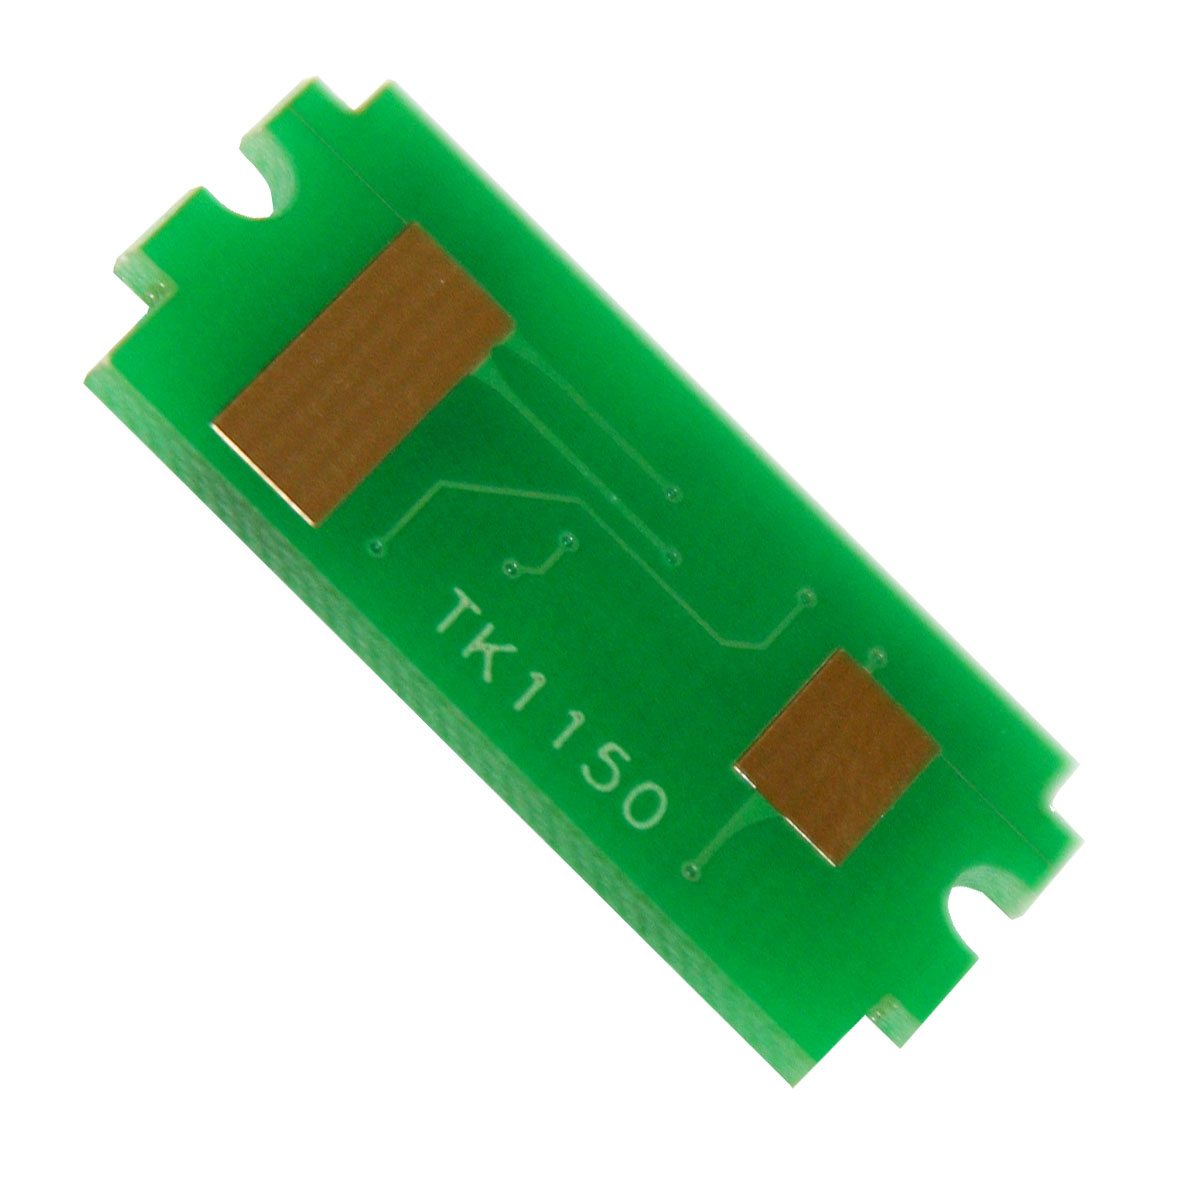 Chip zliczający Kyocera-Mita ECOSYS M 2135